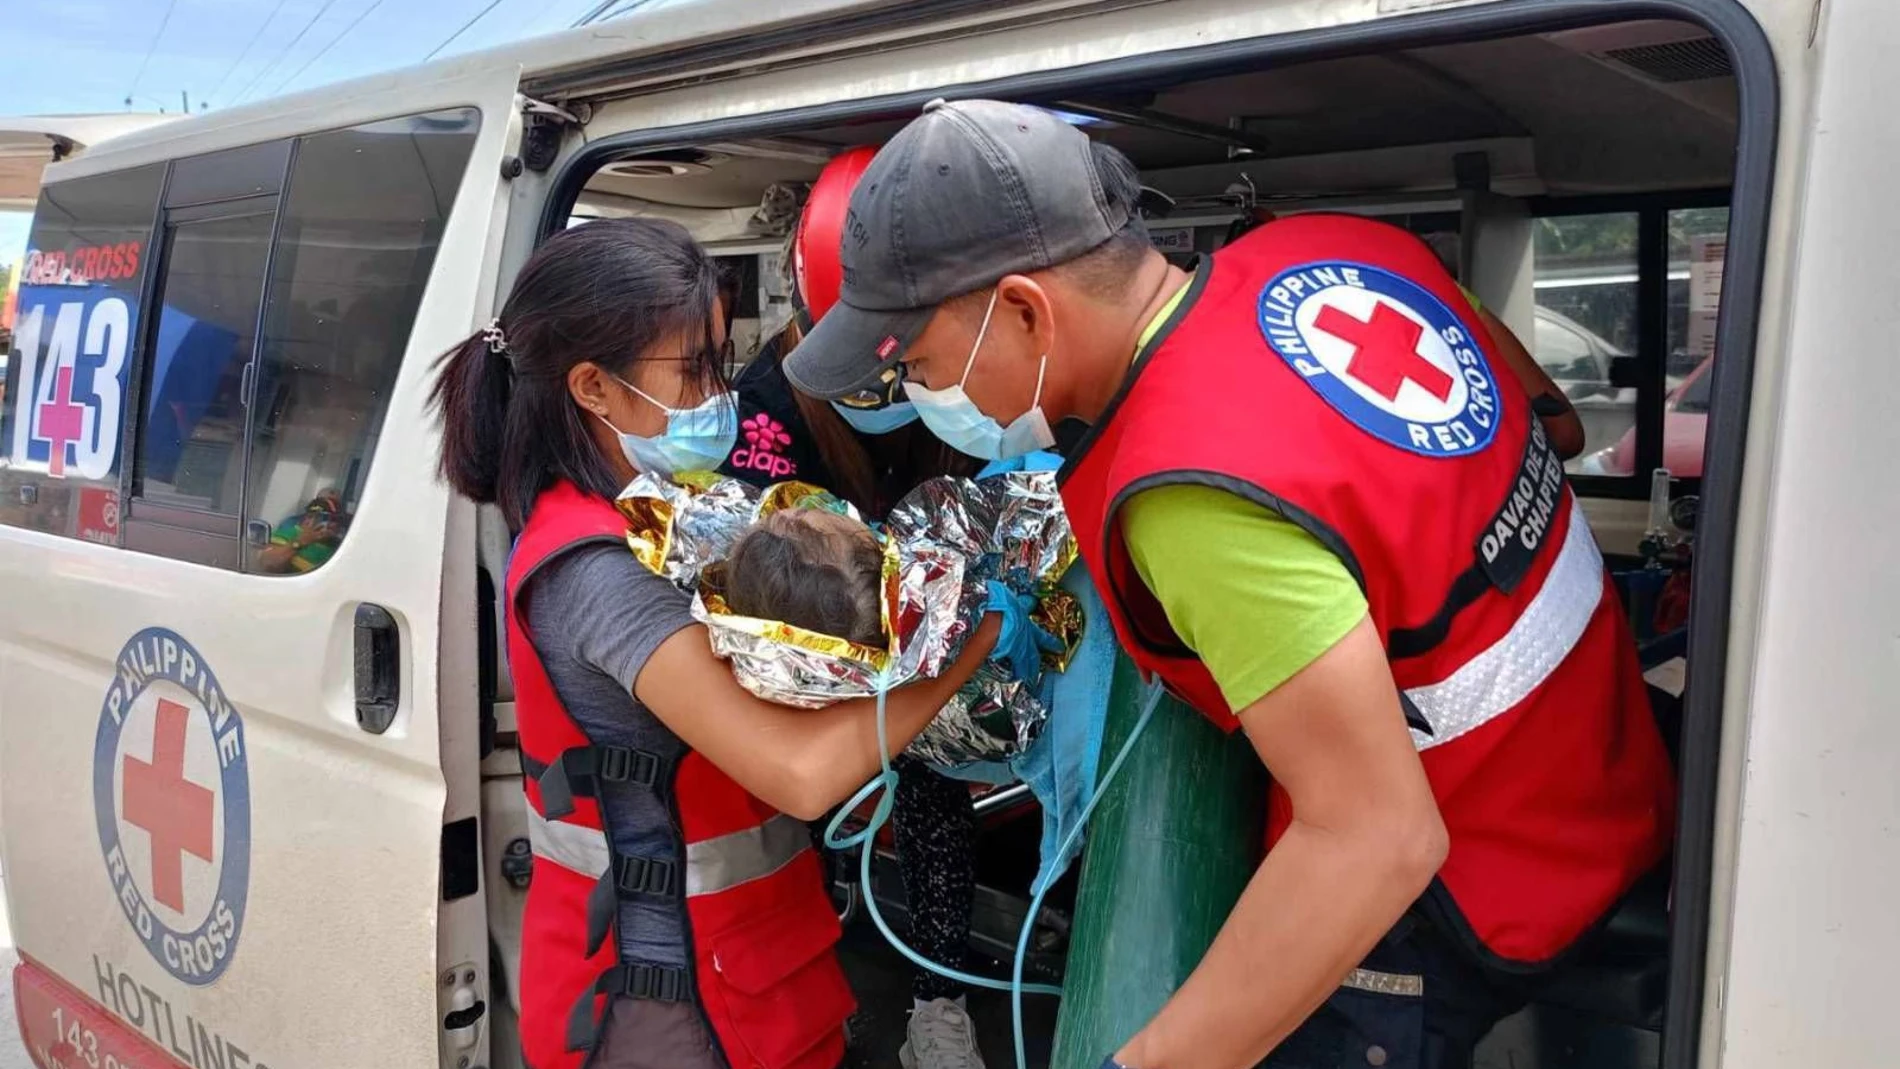 El momento del rescate de una niña de tres años por la Cruz Roja de Filipinas